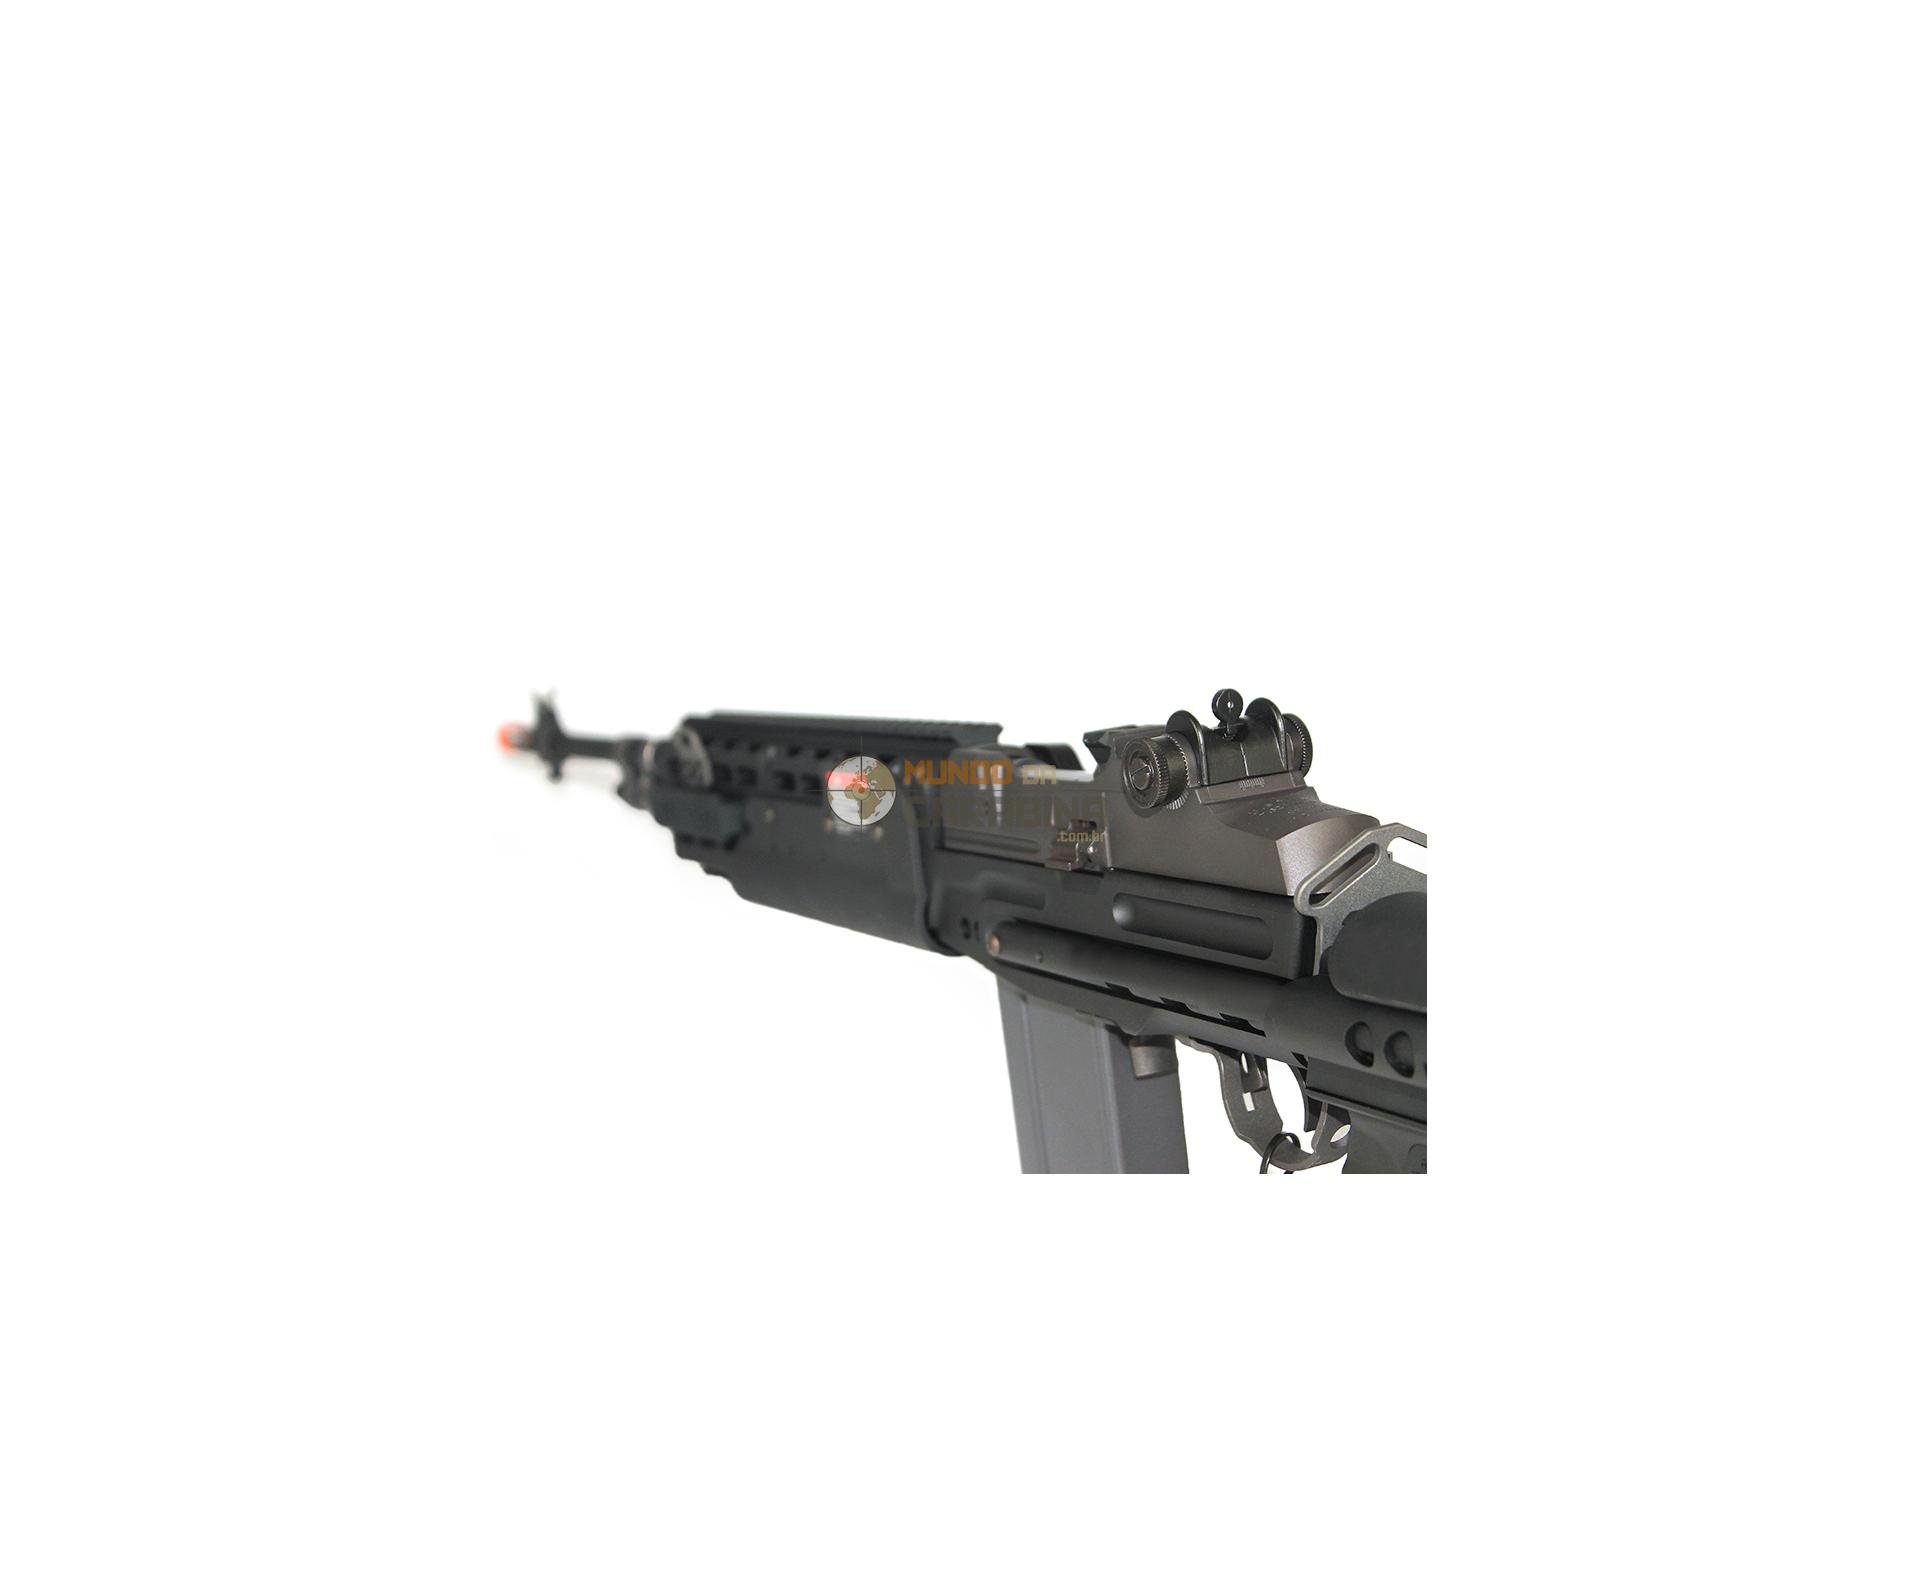 Rifle De Airsoft Gr14 Hba-long Dmr/sniper - Full Metal 6mm - G&g